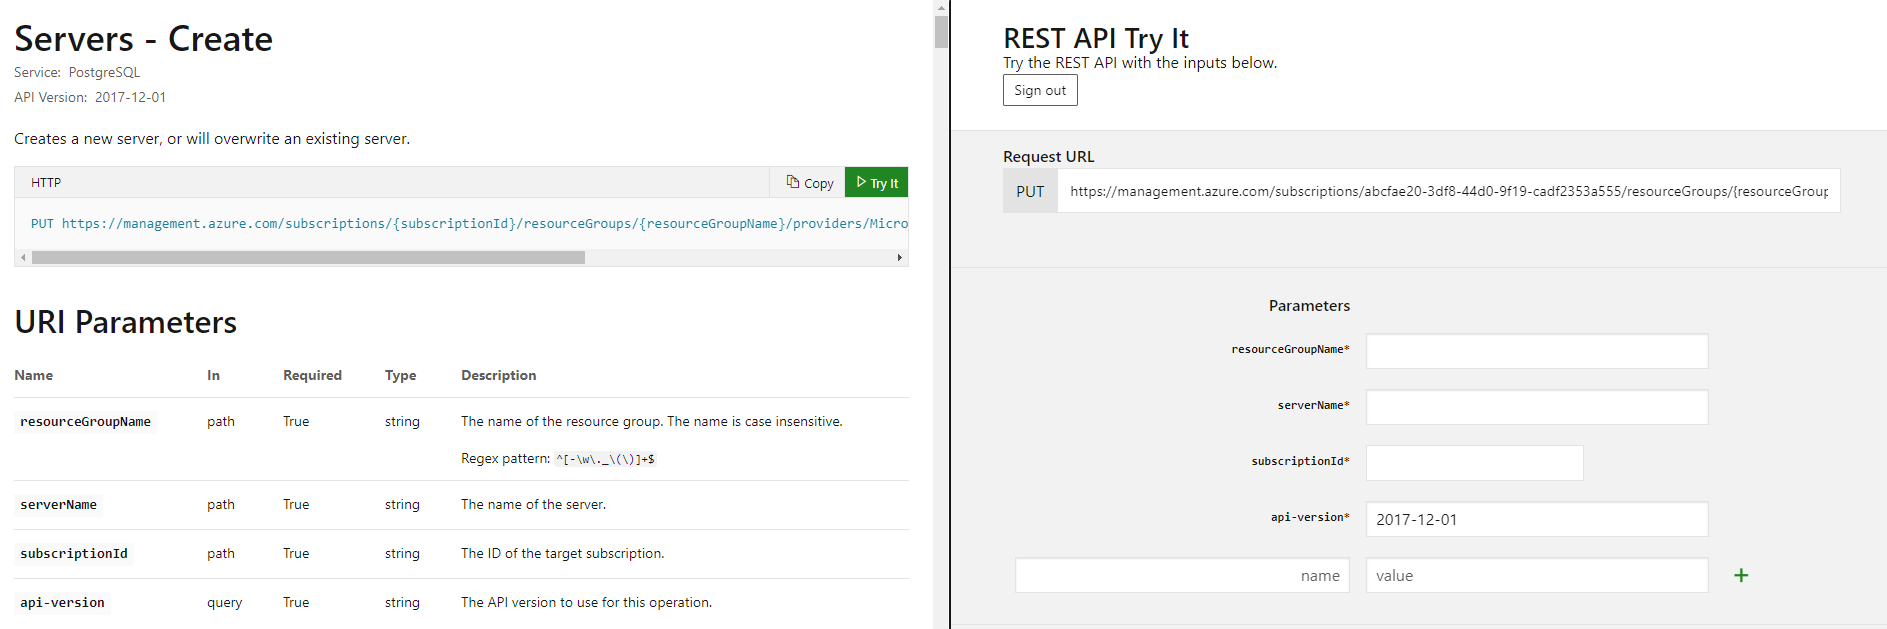 Creare un server usando API REST